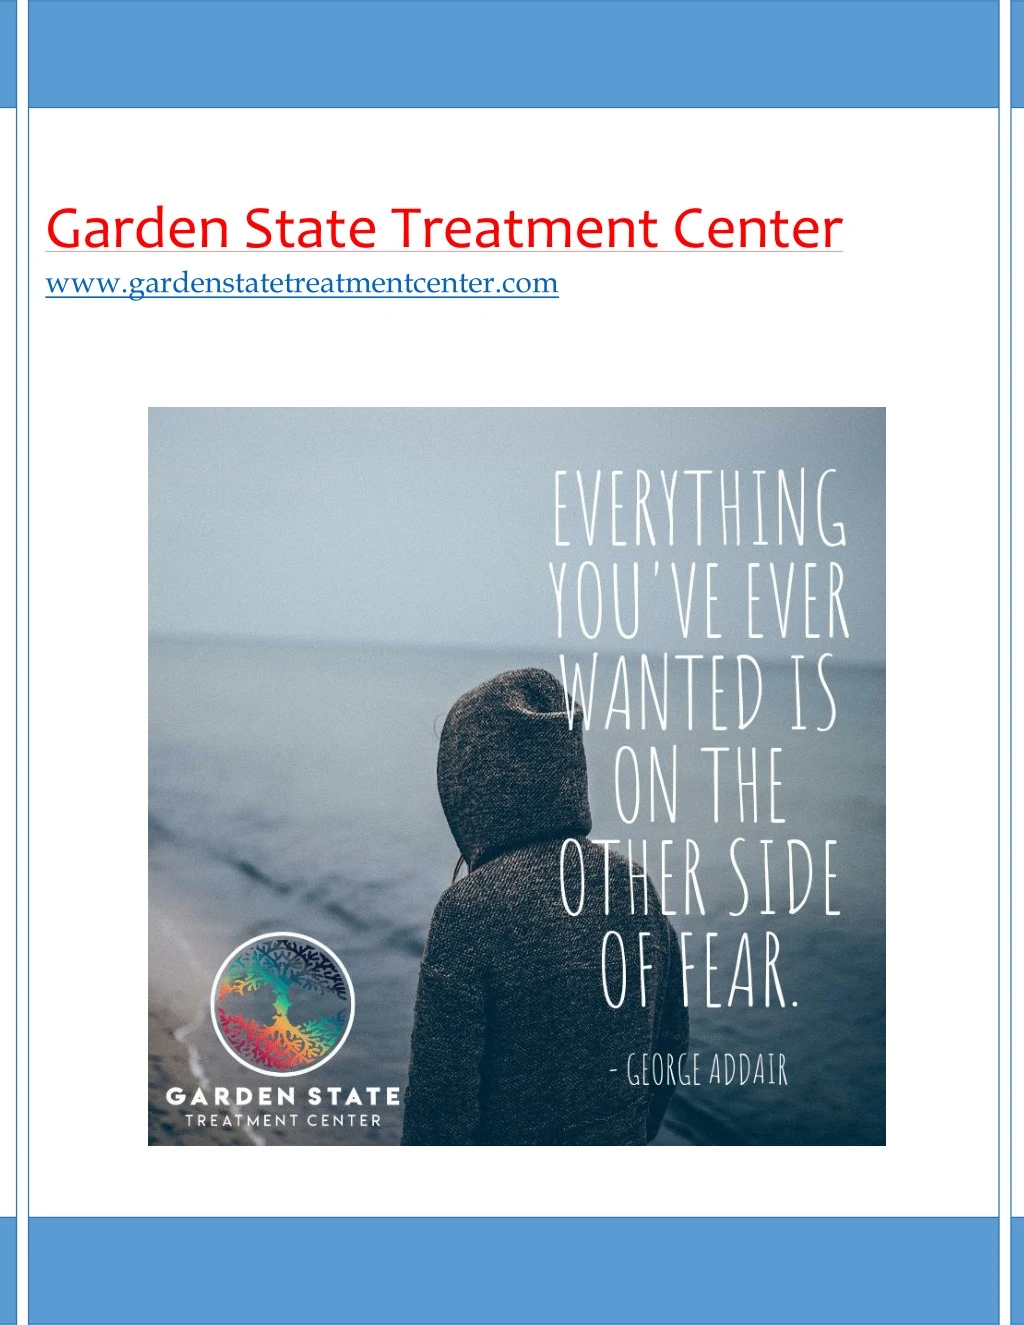 garden state treatment center